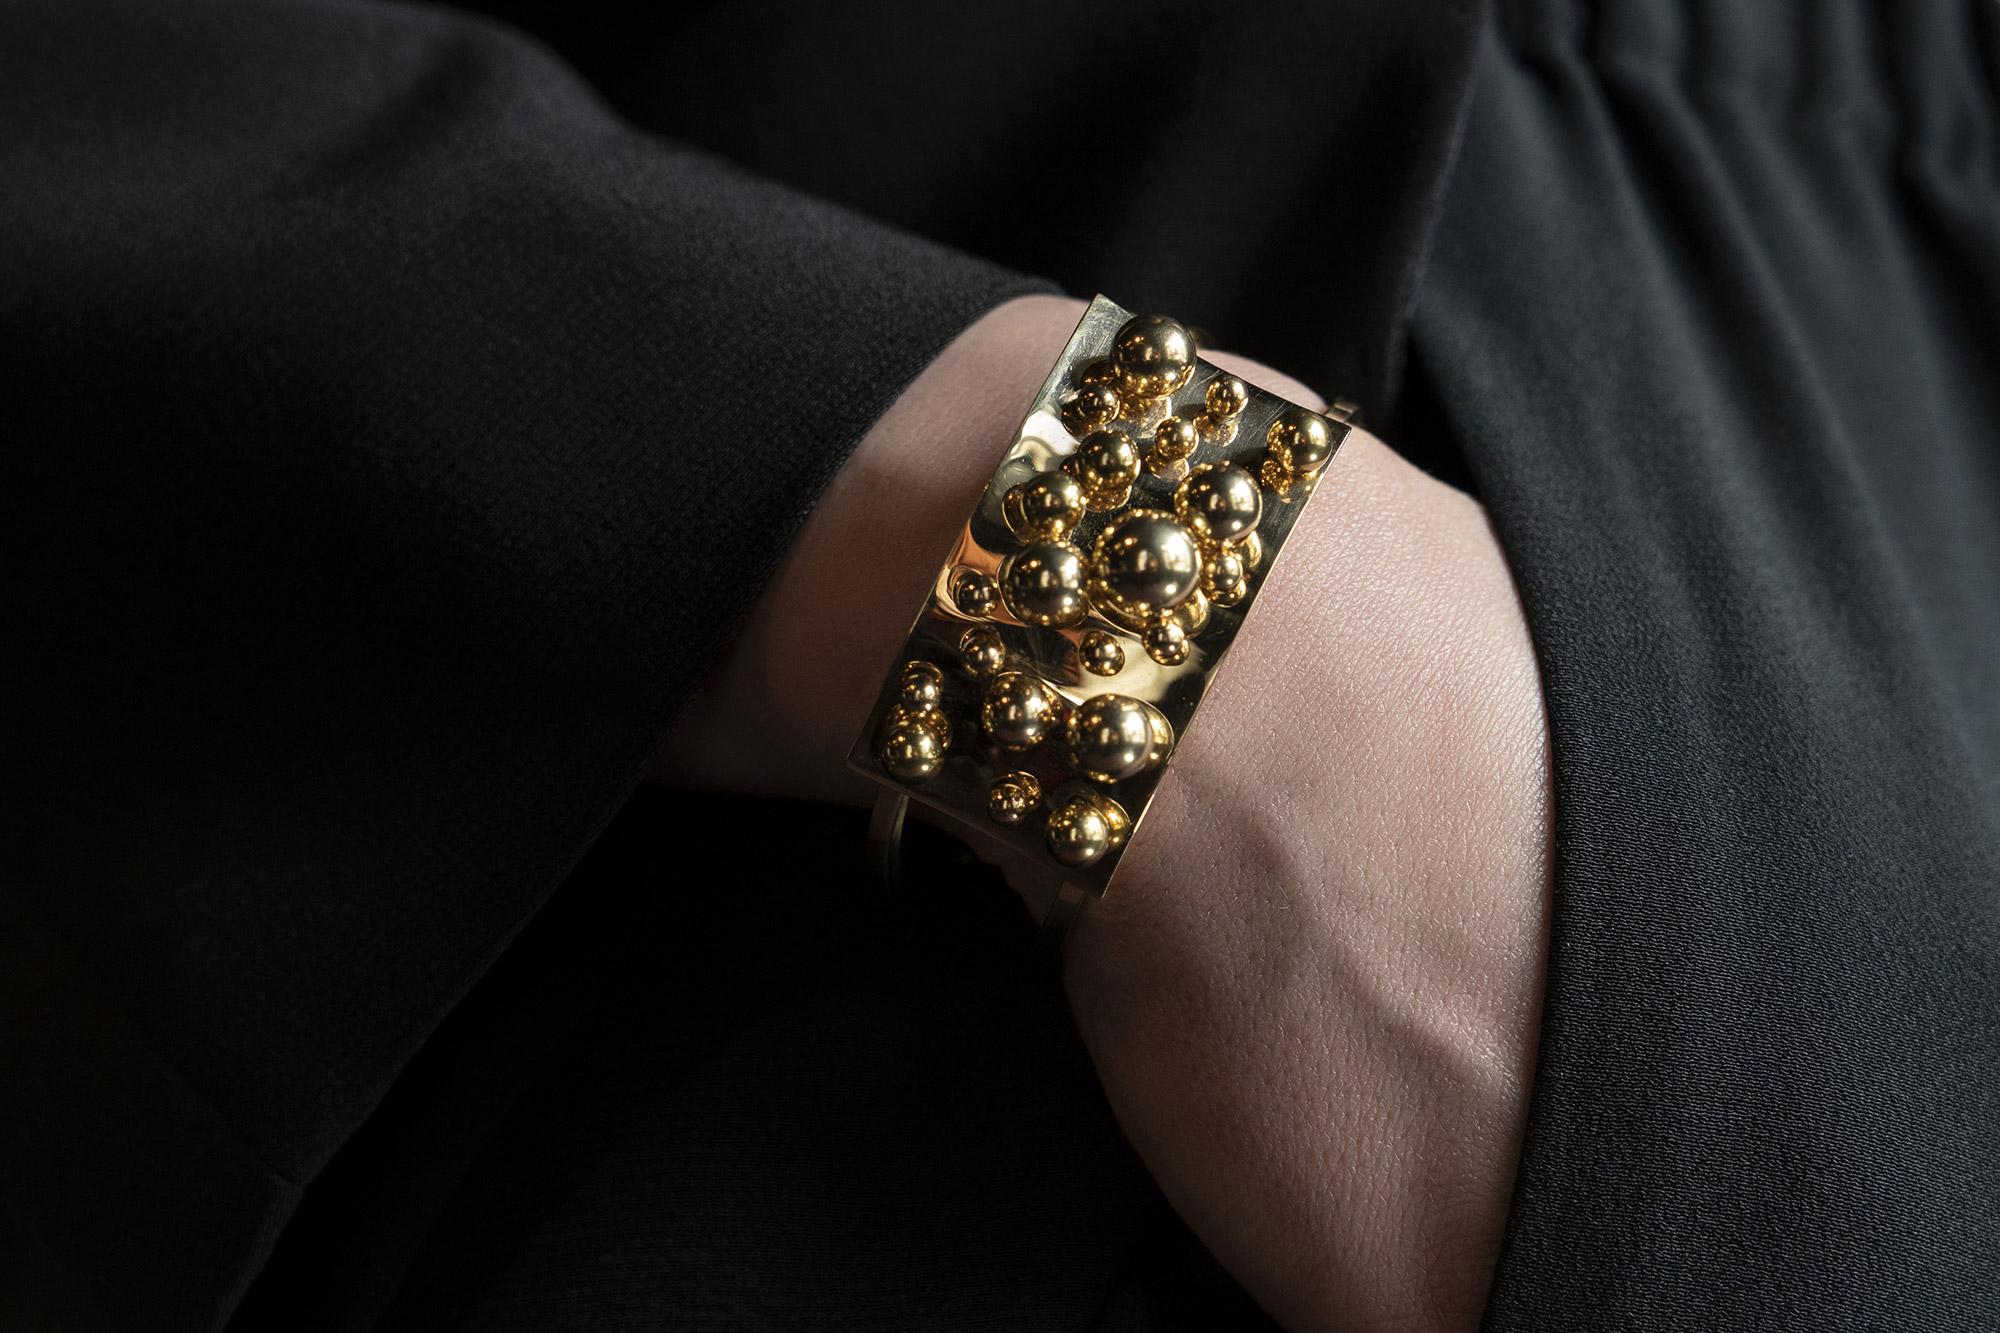 Ein seltenes Juwel der kinetischen Kunst. 
Ein offenes Armband aus 18 Karat Gold, verziert mit beweglichen Kugeln, entworfen von dem berühmten belgischen Künstler Pol Bury (1922 - 2005).
Herausgegeben von Artcurial Paris im Jahr